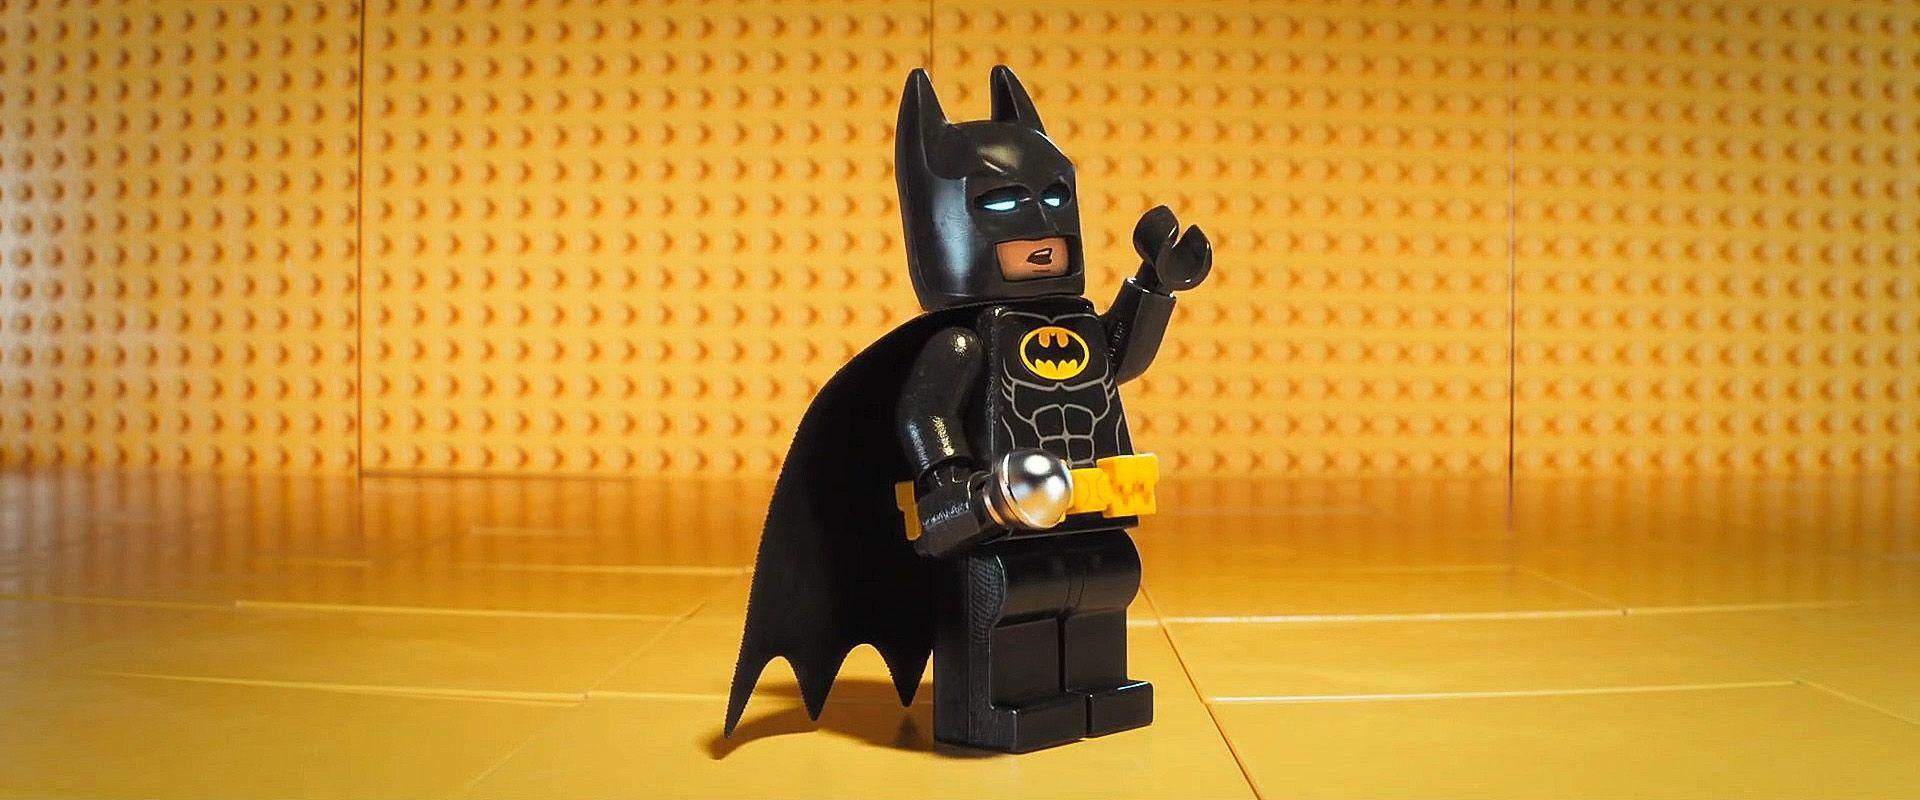 LEGO Batman Movie Wallpapers Wallpaper Cave